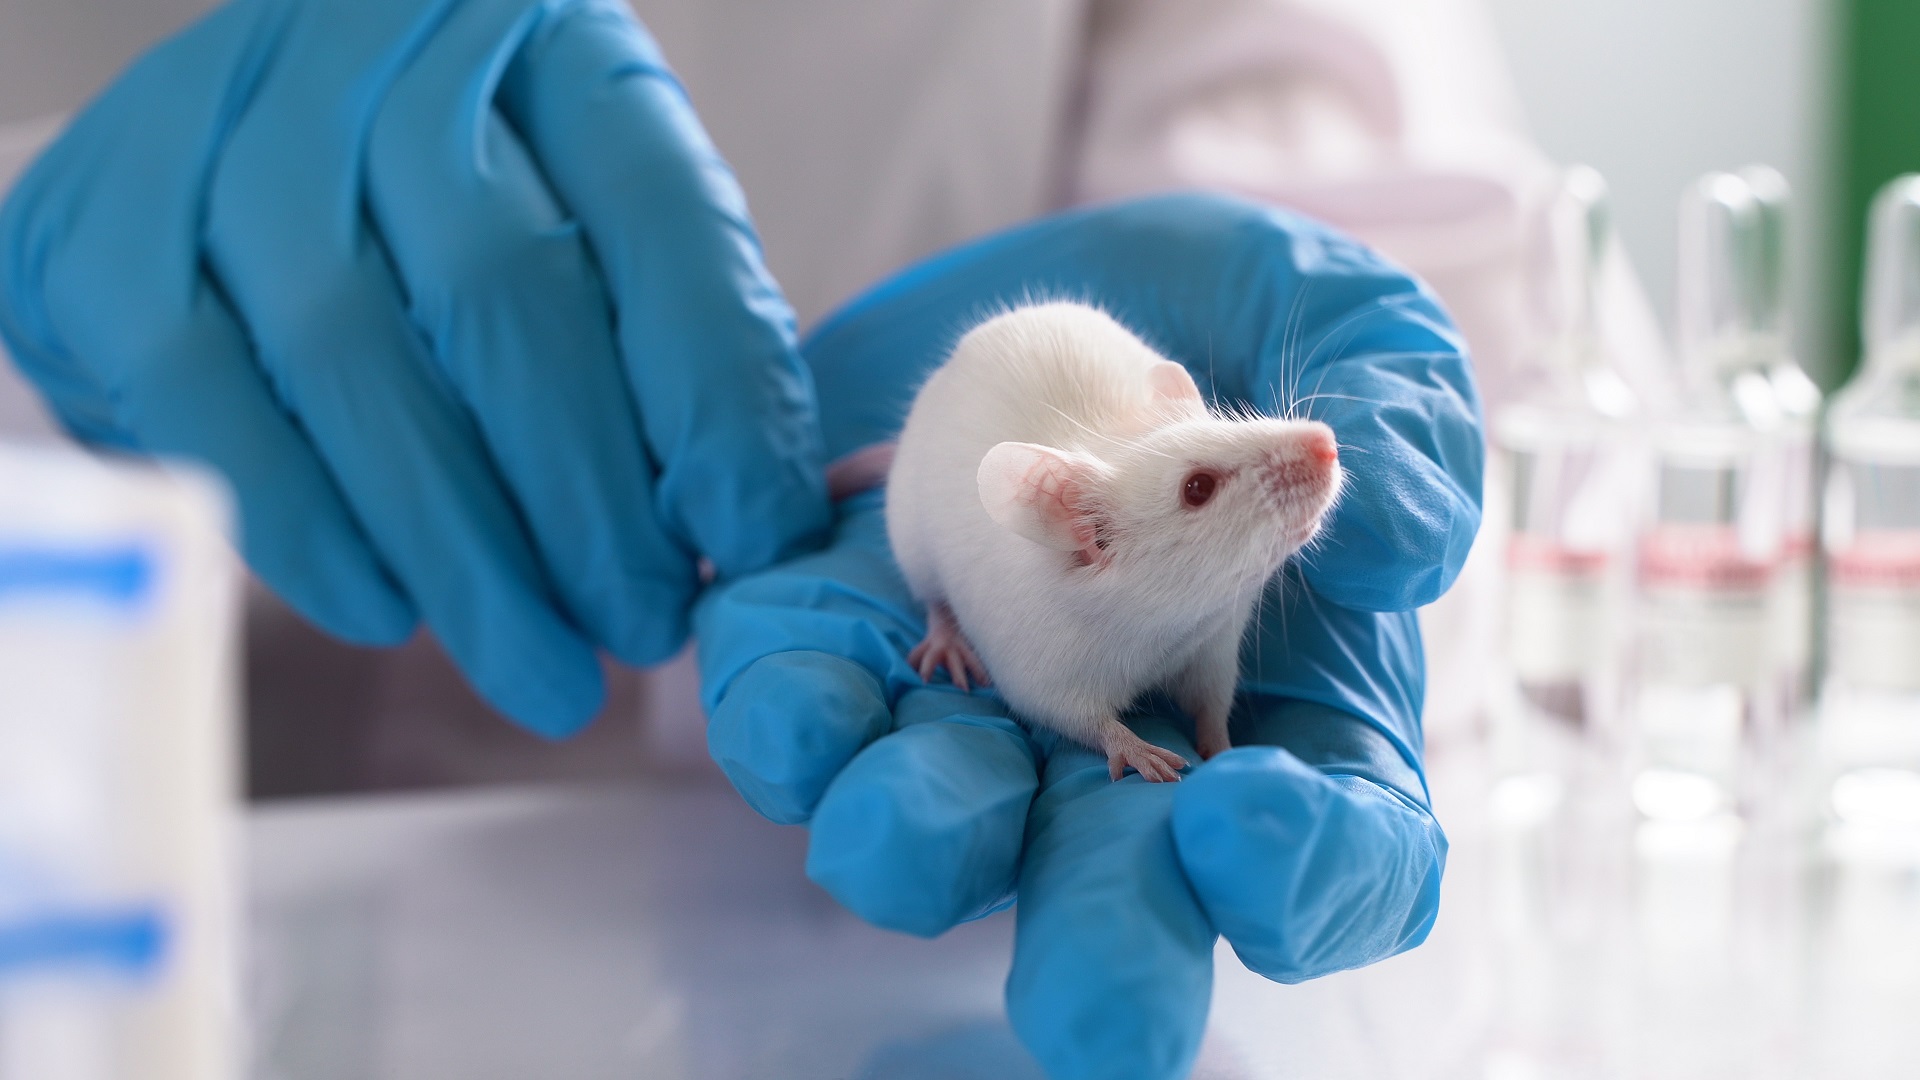 Eine weiße Maus sitzt im Tierlabor auf der Hand einer Person, die blaue Handschuhe trägt.